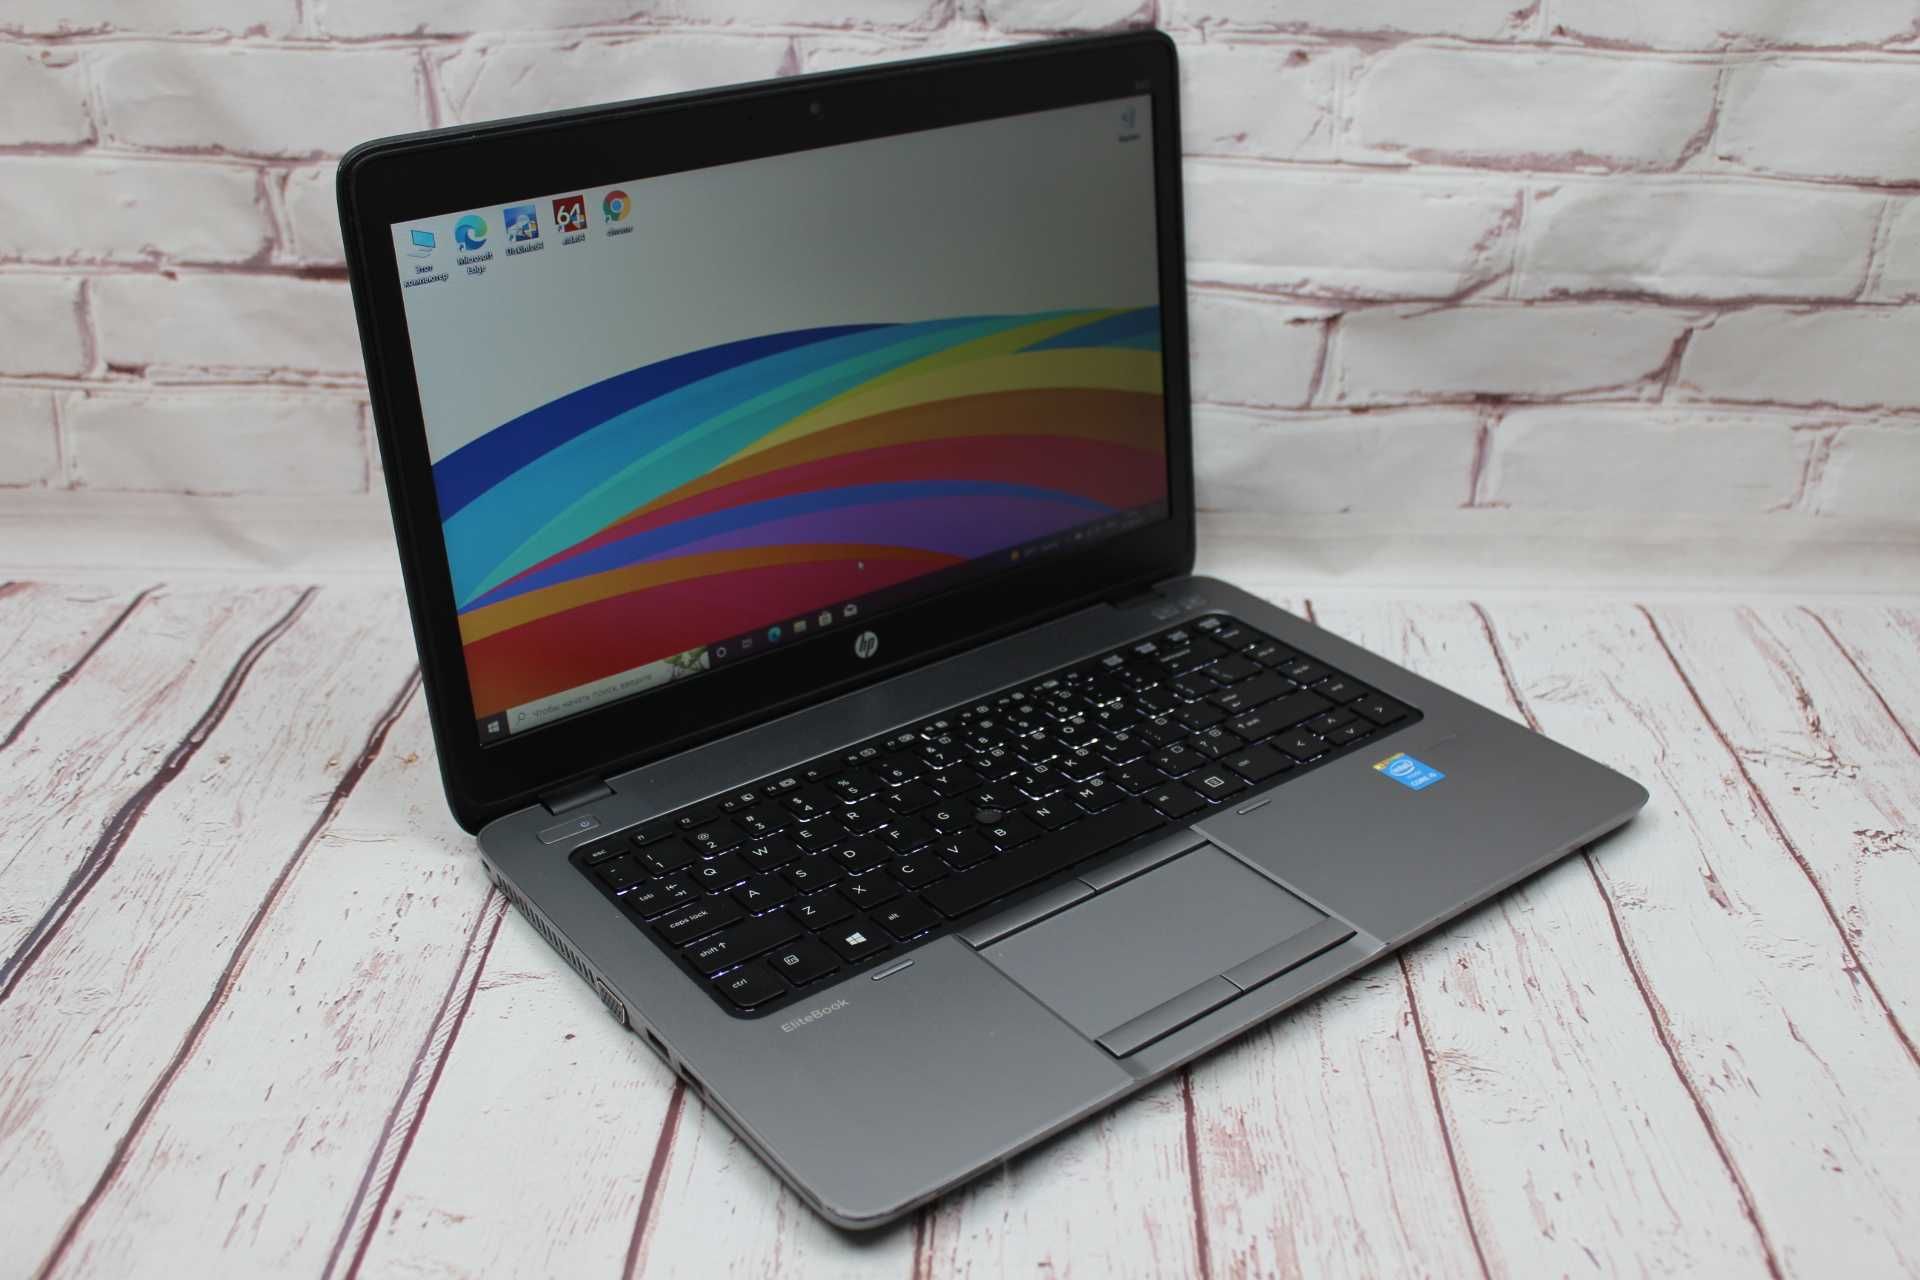 Ігровий ноутбук ультрабук HP / intel core i5 / 8 gb / HDD / США